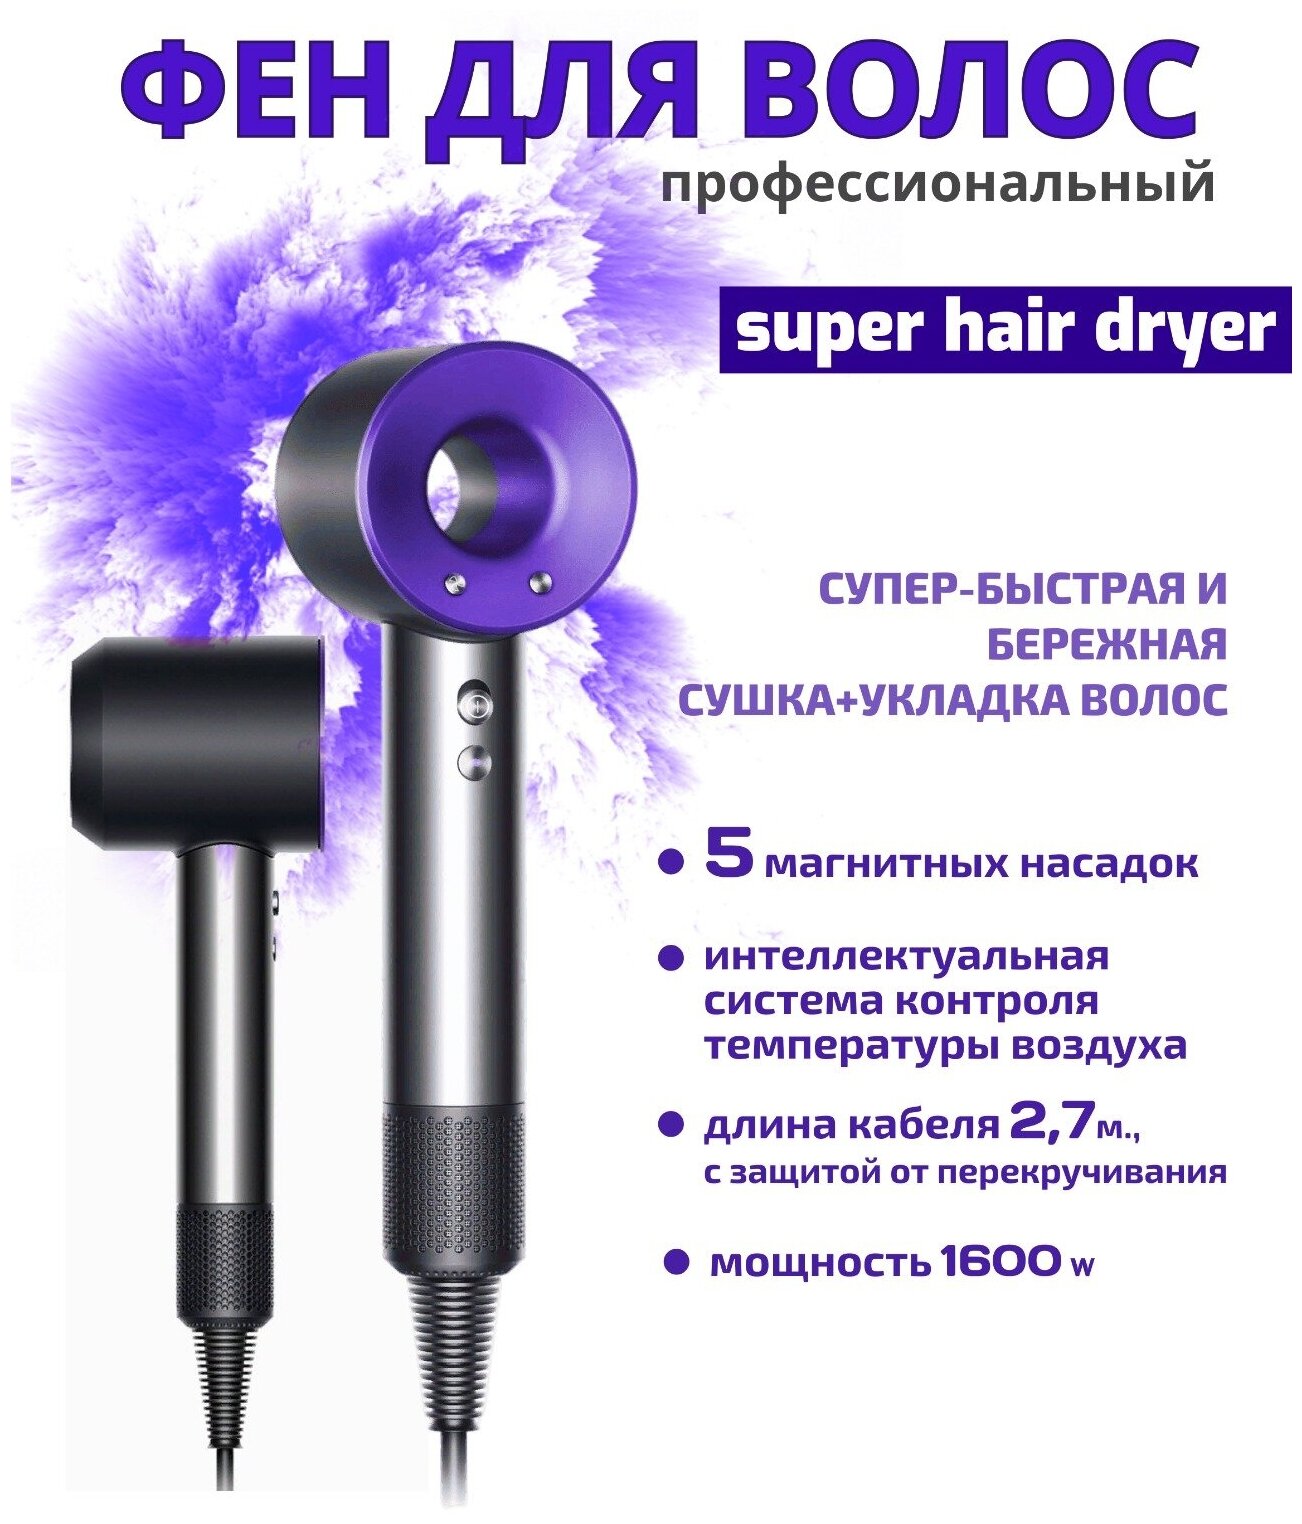 Фен-стайлер для волос профессиональный Super hair dryer